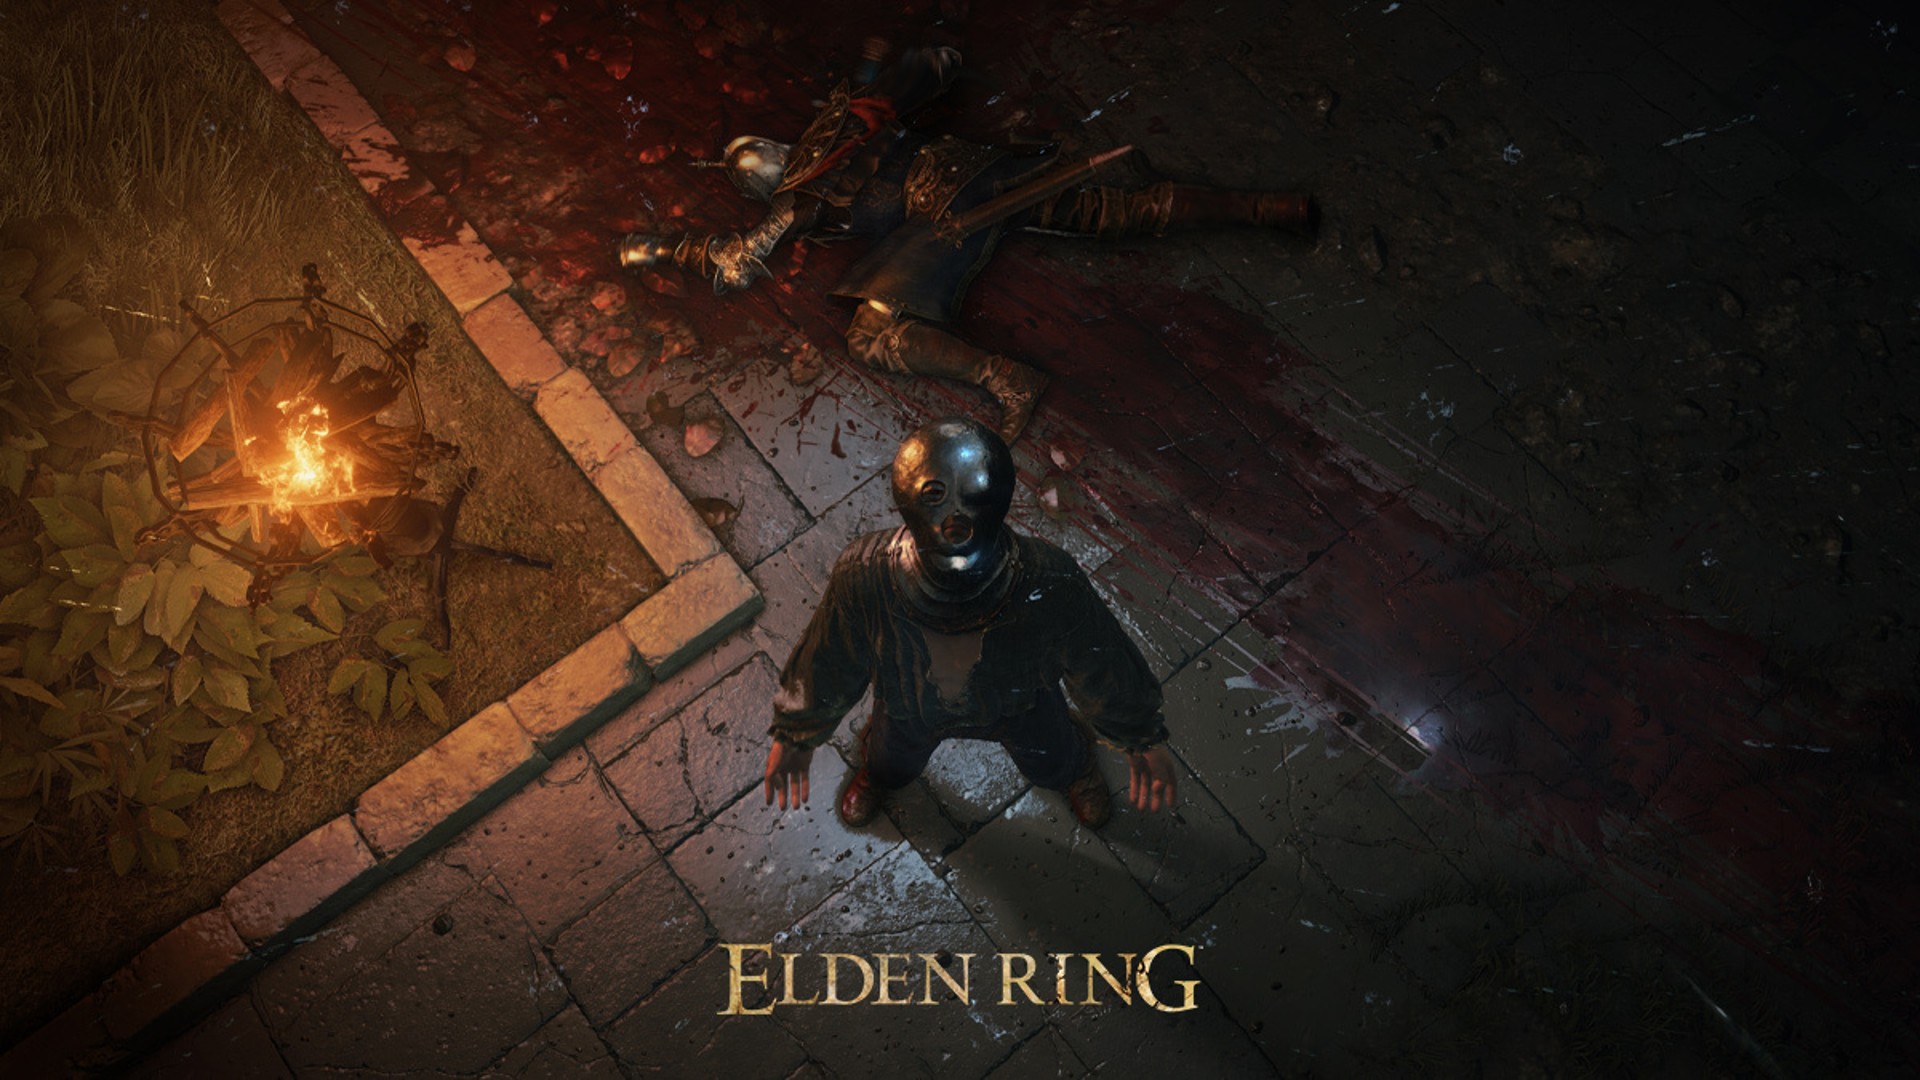 ผู้มัวหมองใน Elden Ring ค้นพบห้องลับหลังกำแพง ต้องตี 50 ครั้ง ถึงจะเข้าไปได้